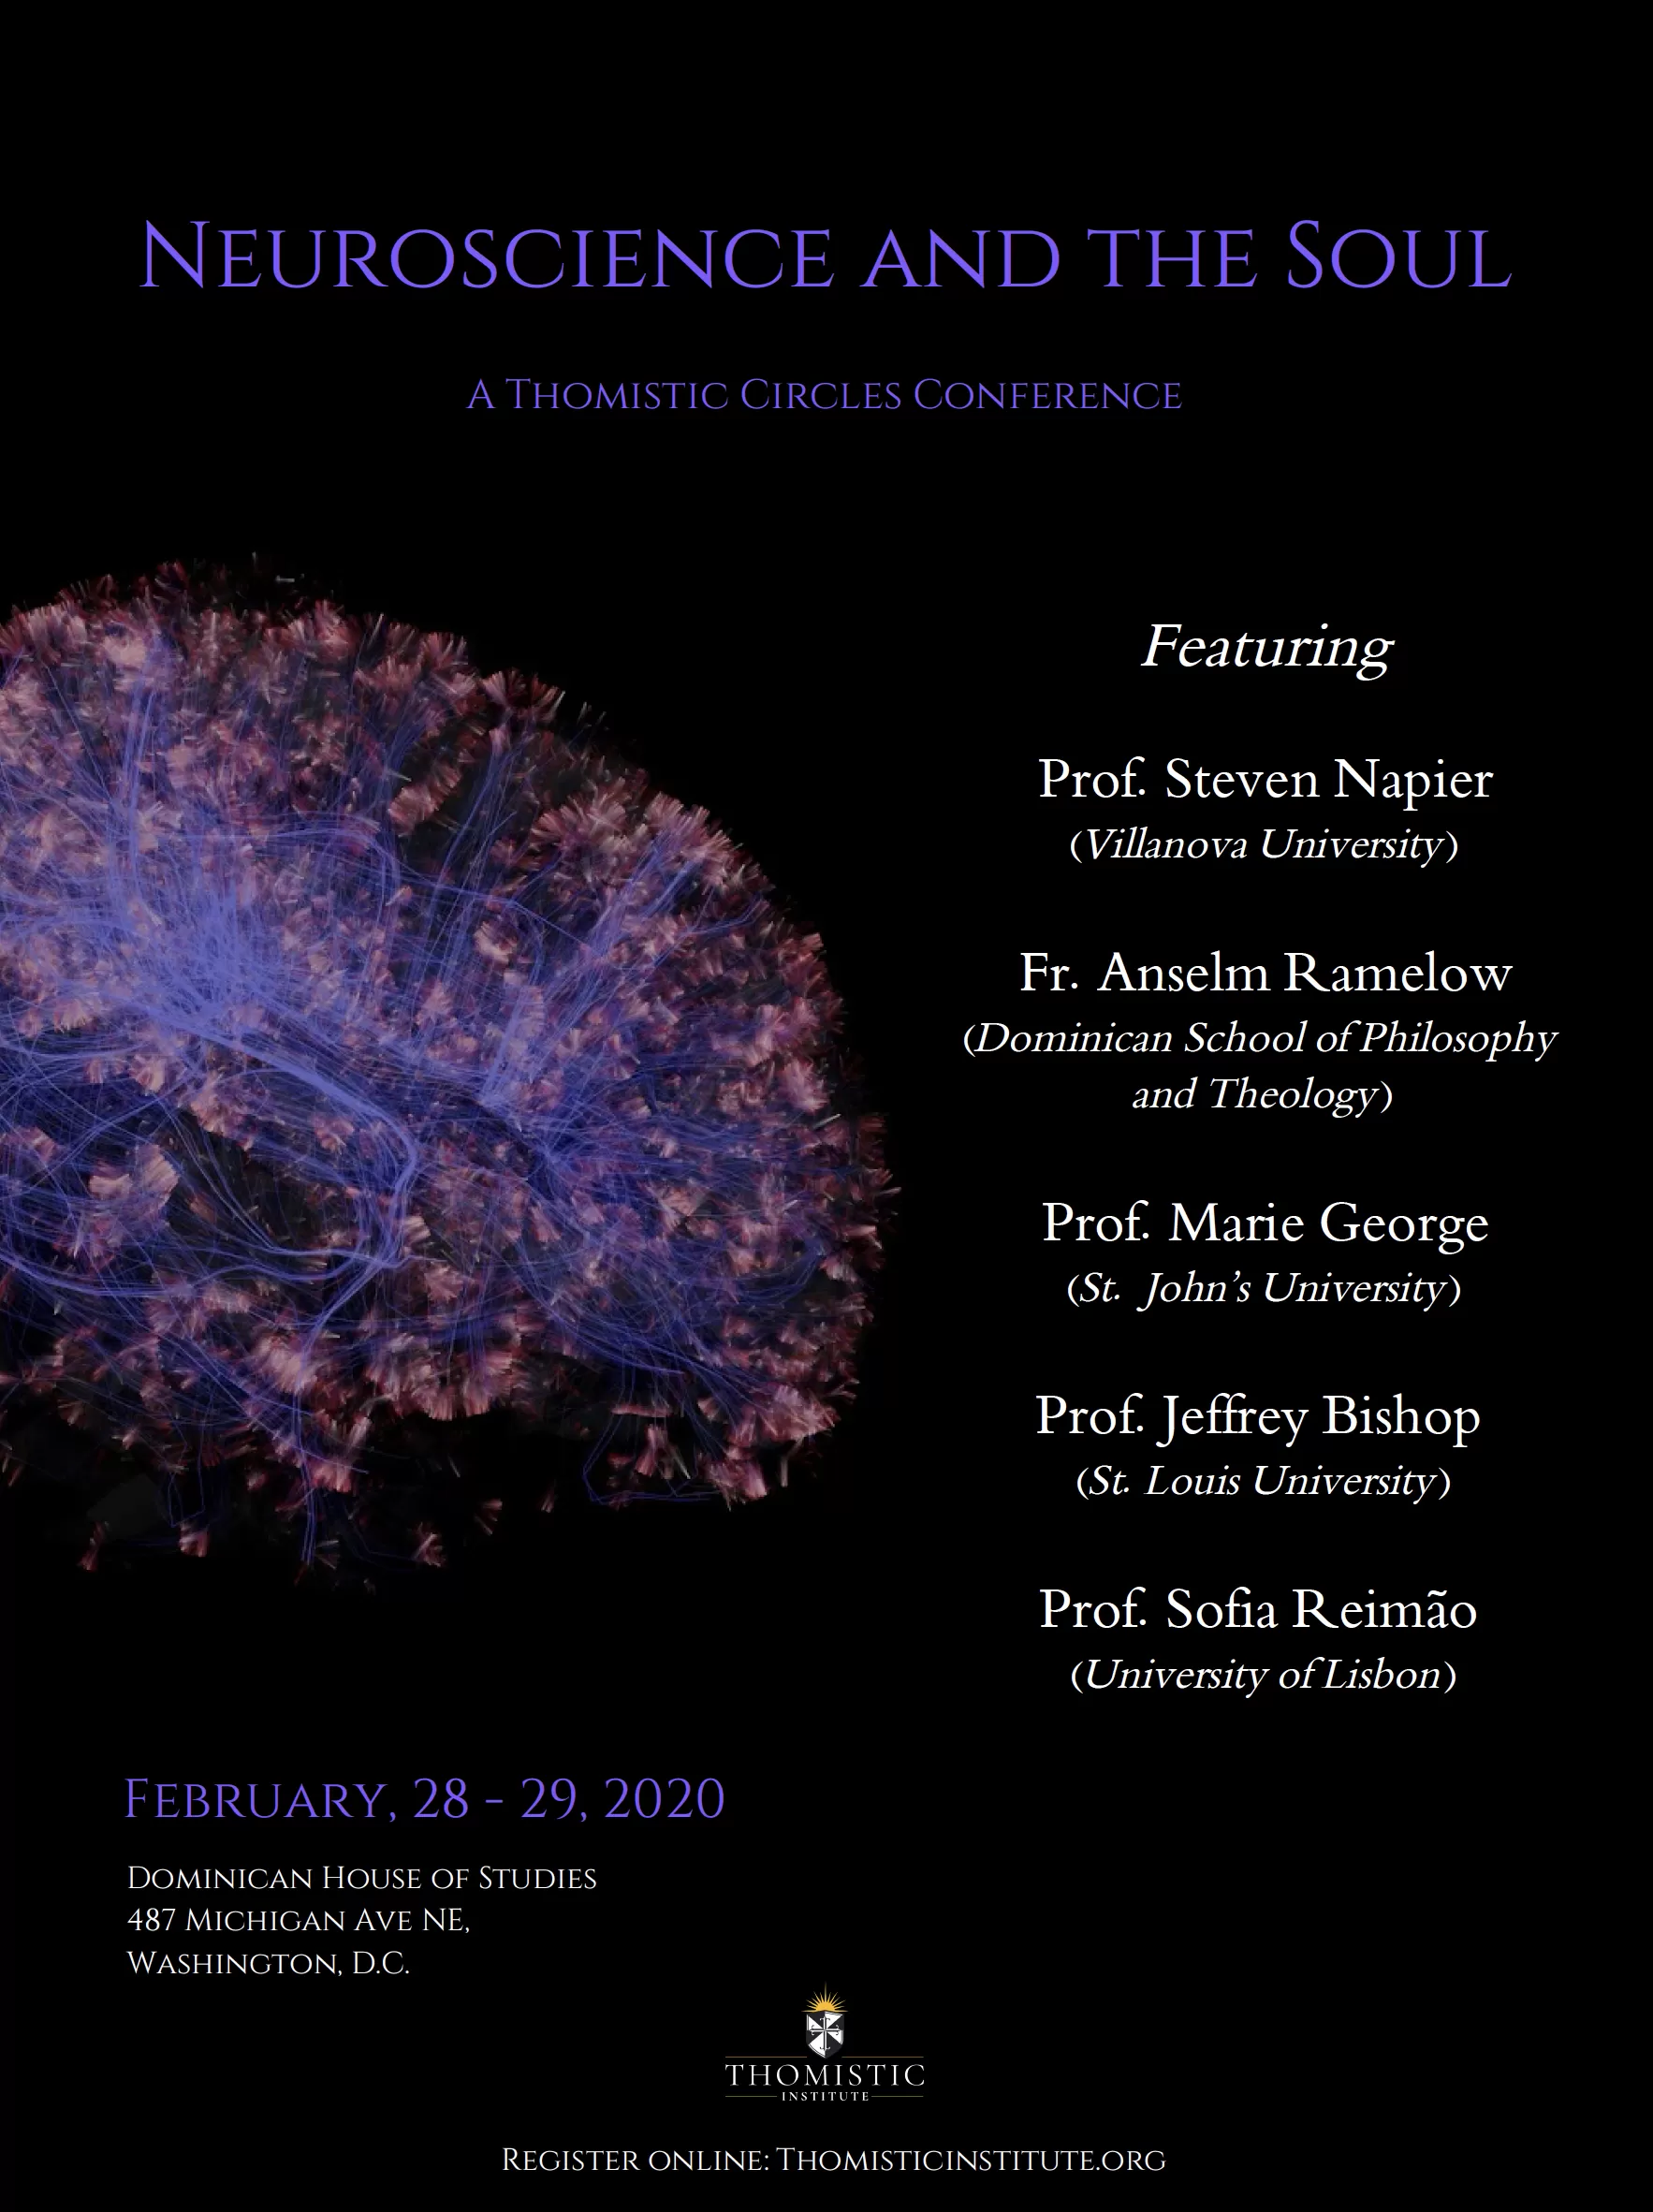 La neurociencia y el alma: una conferencia sobre círculos tomistas